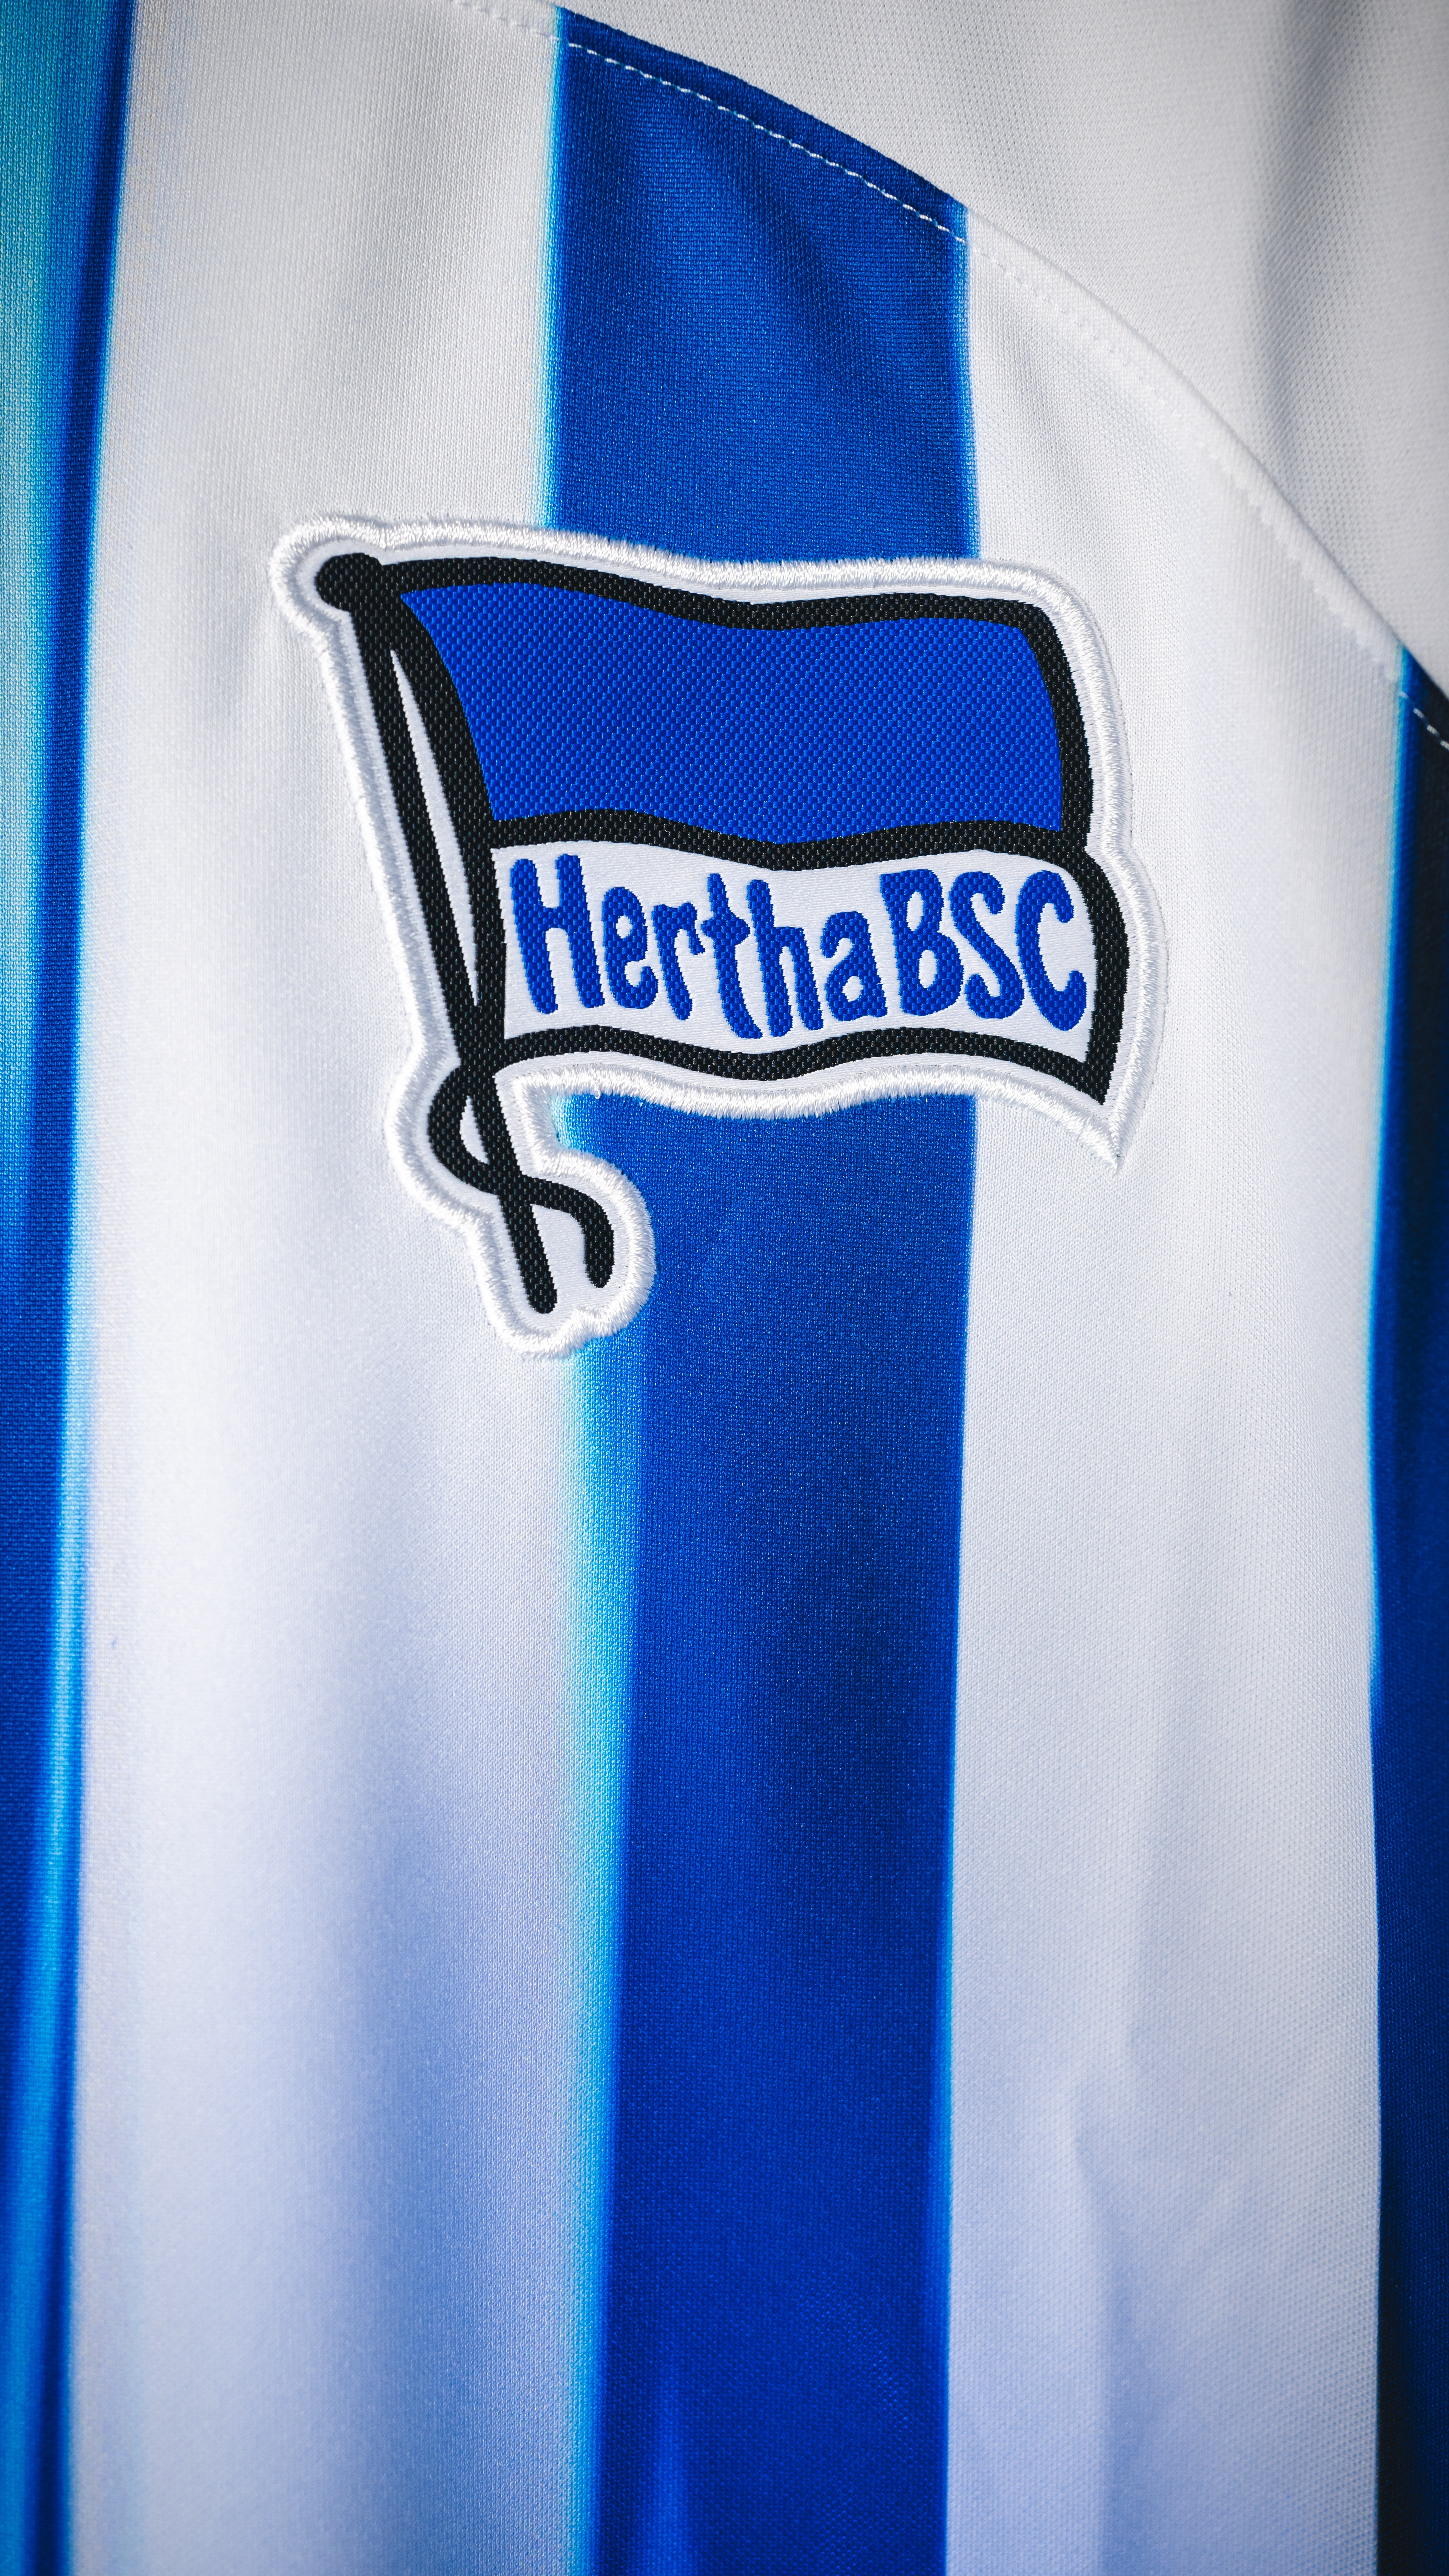 Die Hertha-Fahne auf dem Trikot.